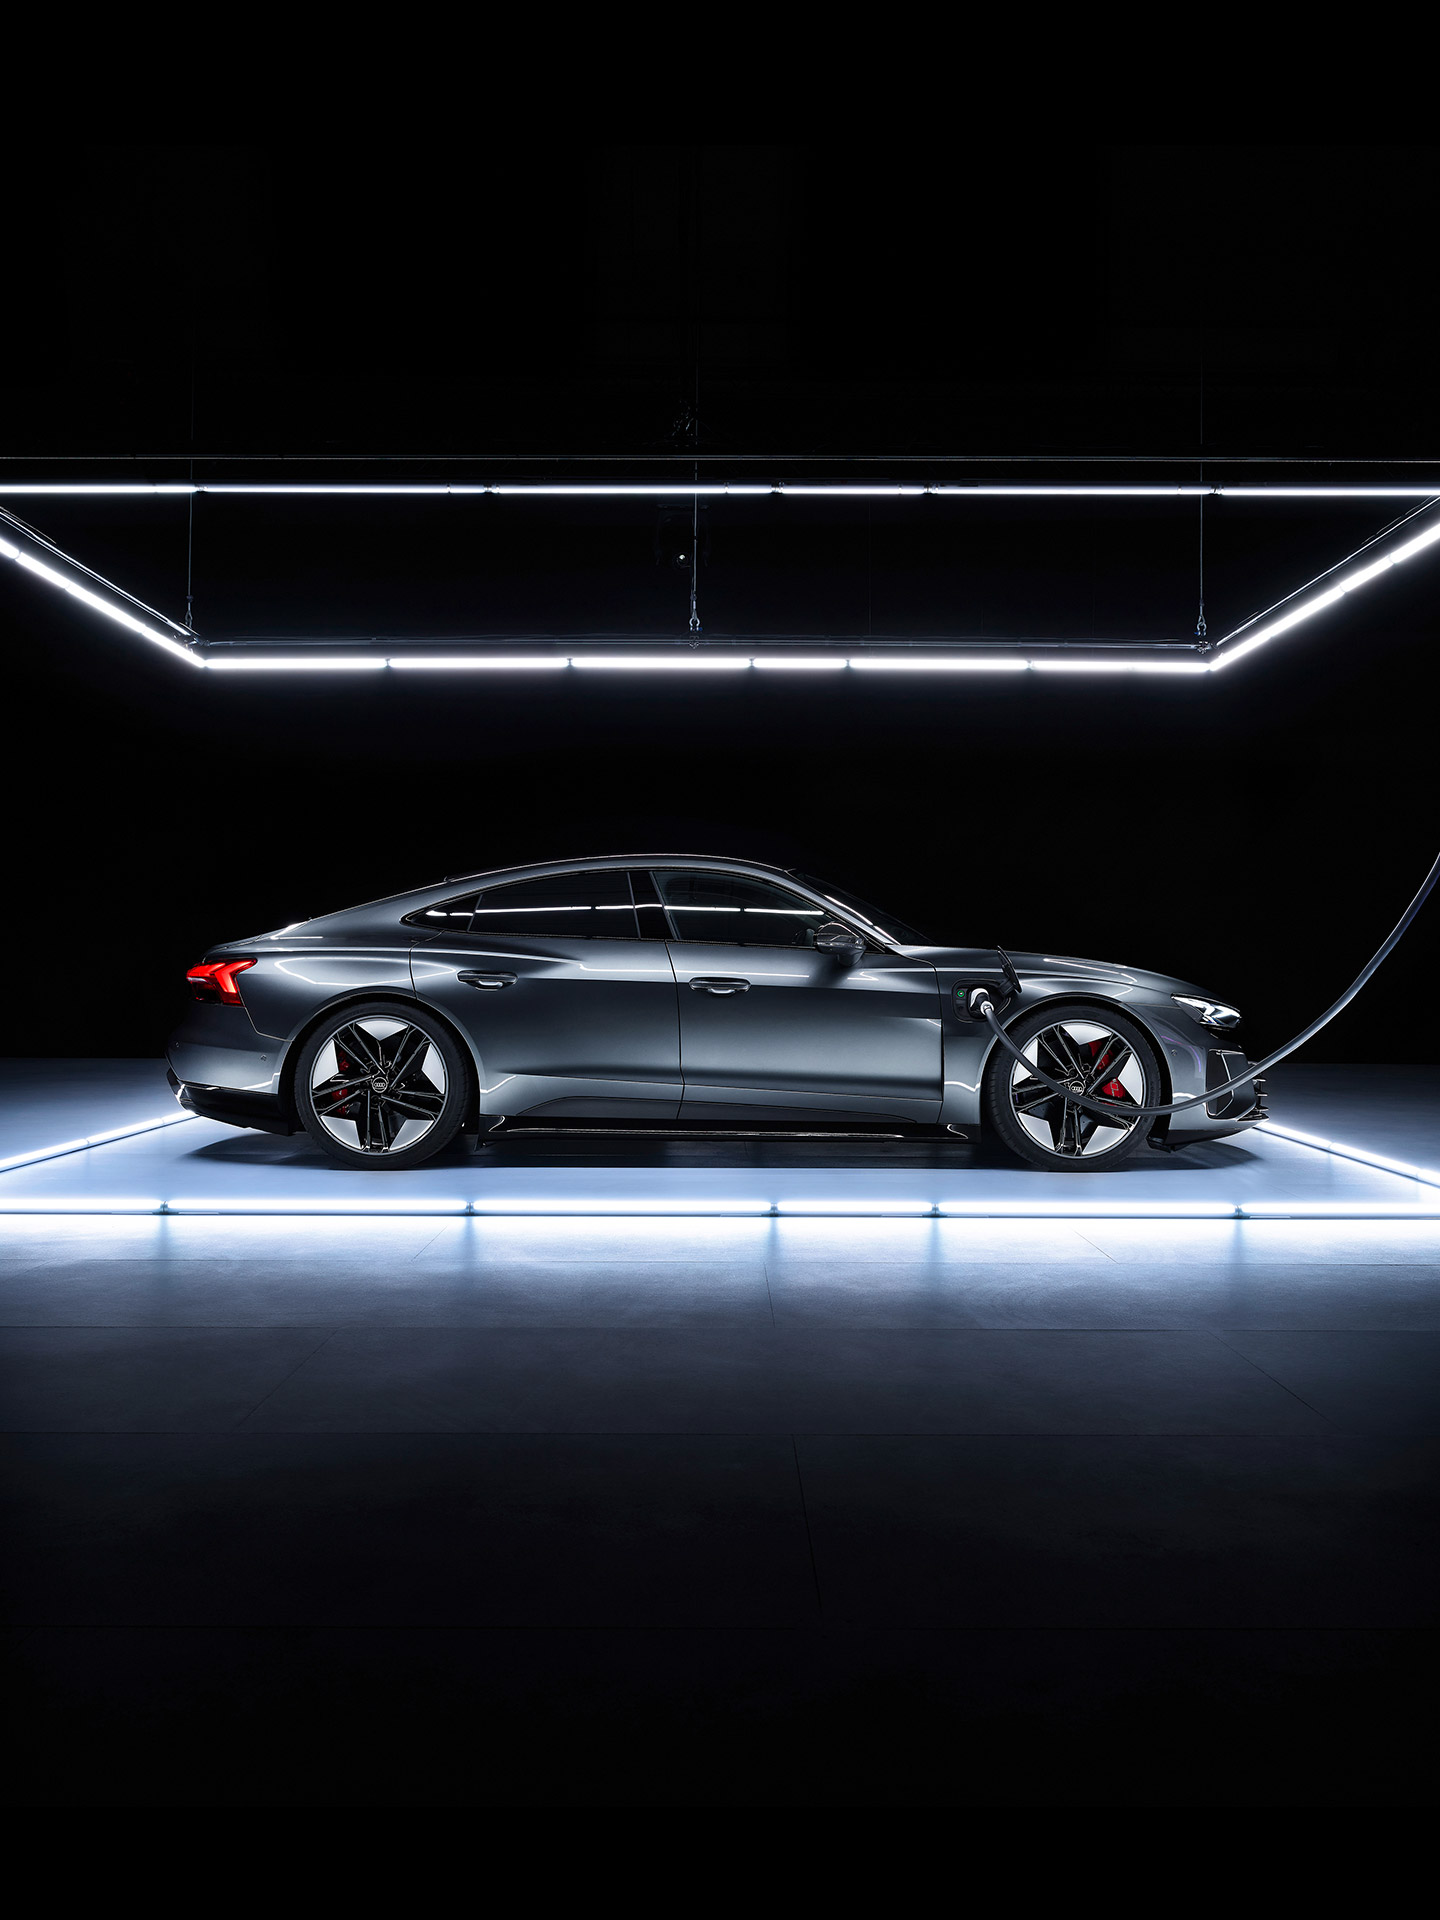 Image alternante d’une Audi e-tron GT grise stationnée avec une ville en arrière-plan, puis sur une plateforme éclairée dans une pièce sombre. 